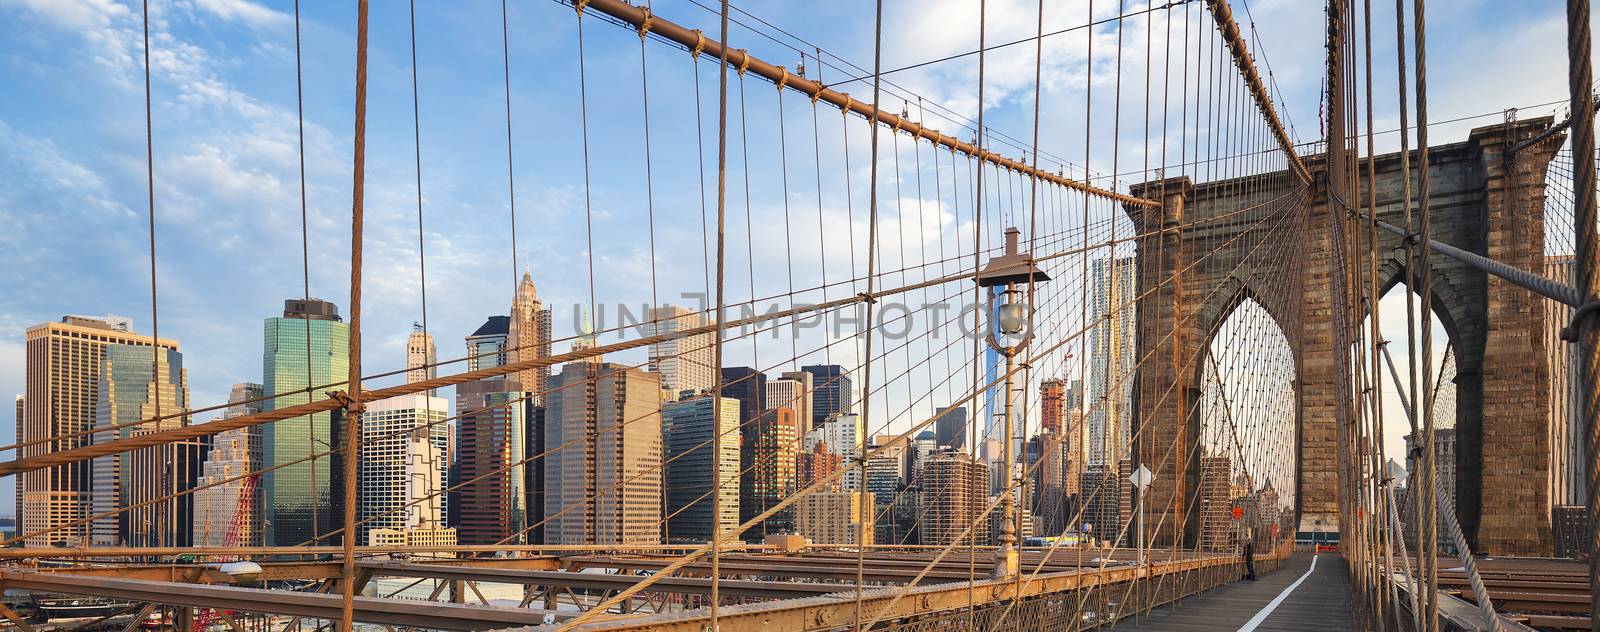 Panoramic view of Brooklyn Bridge, New York, USA.